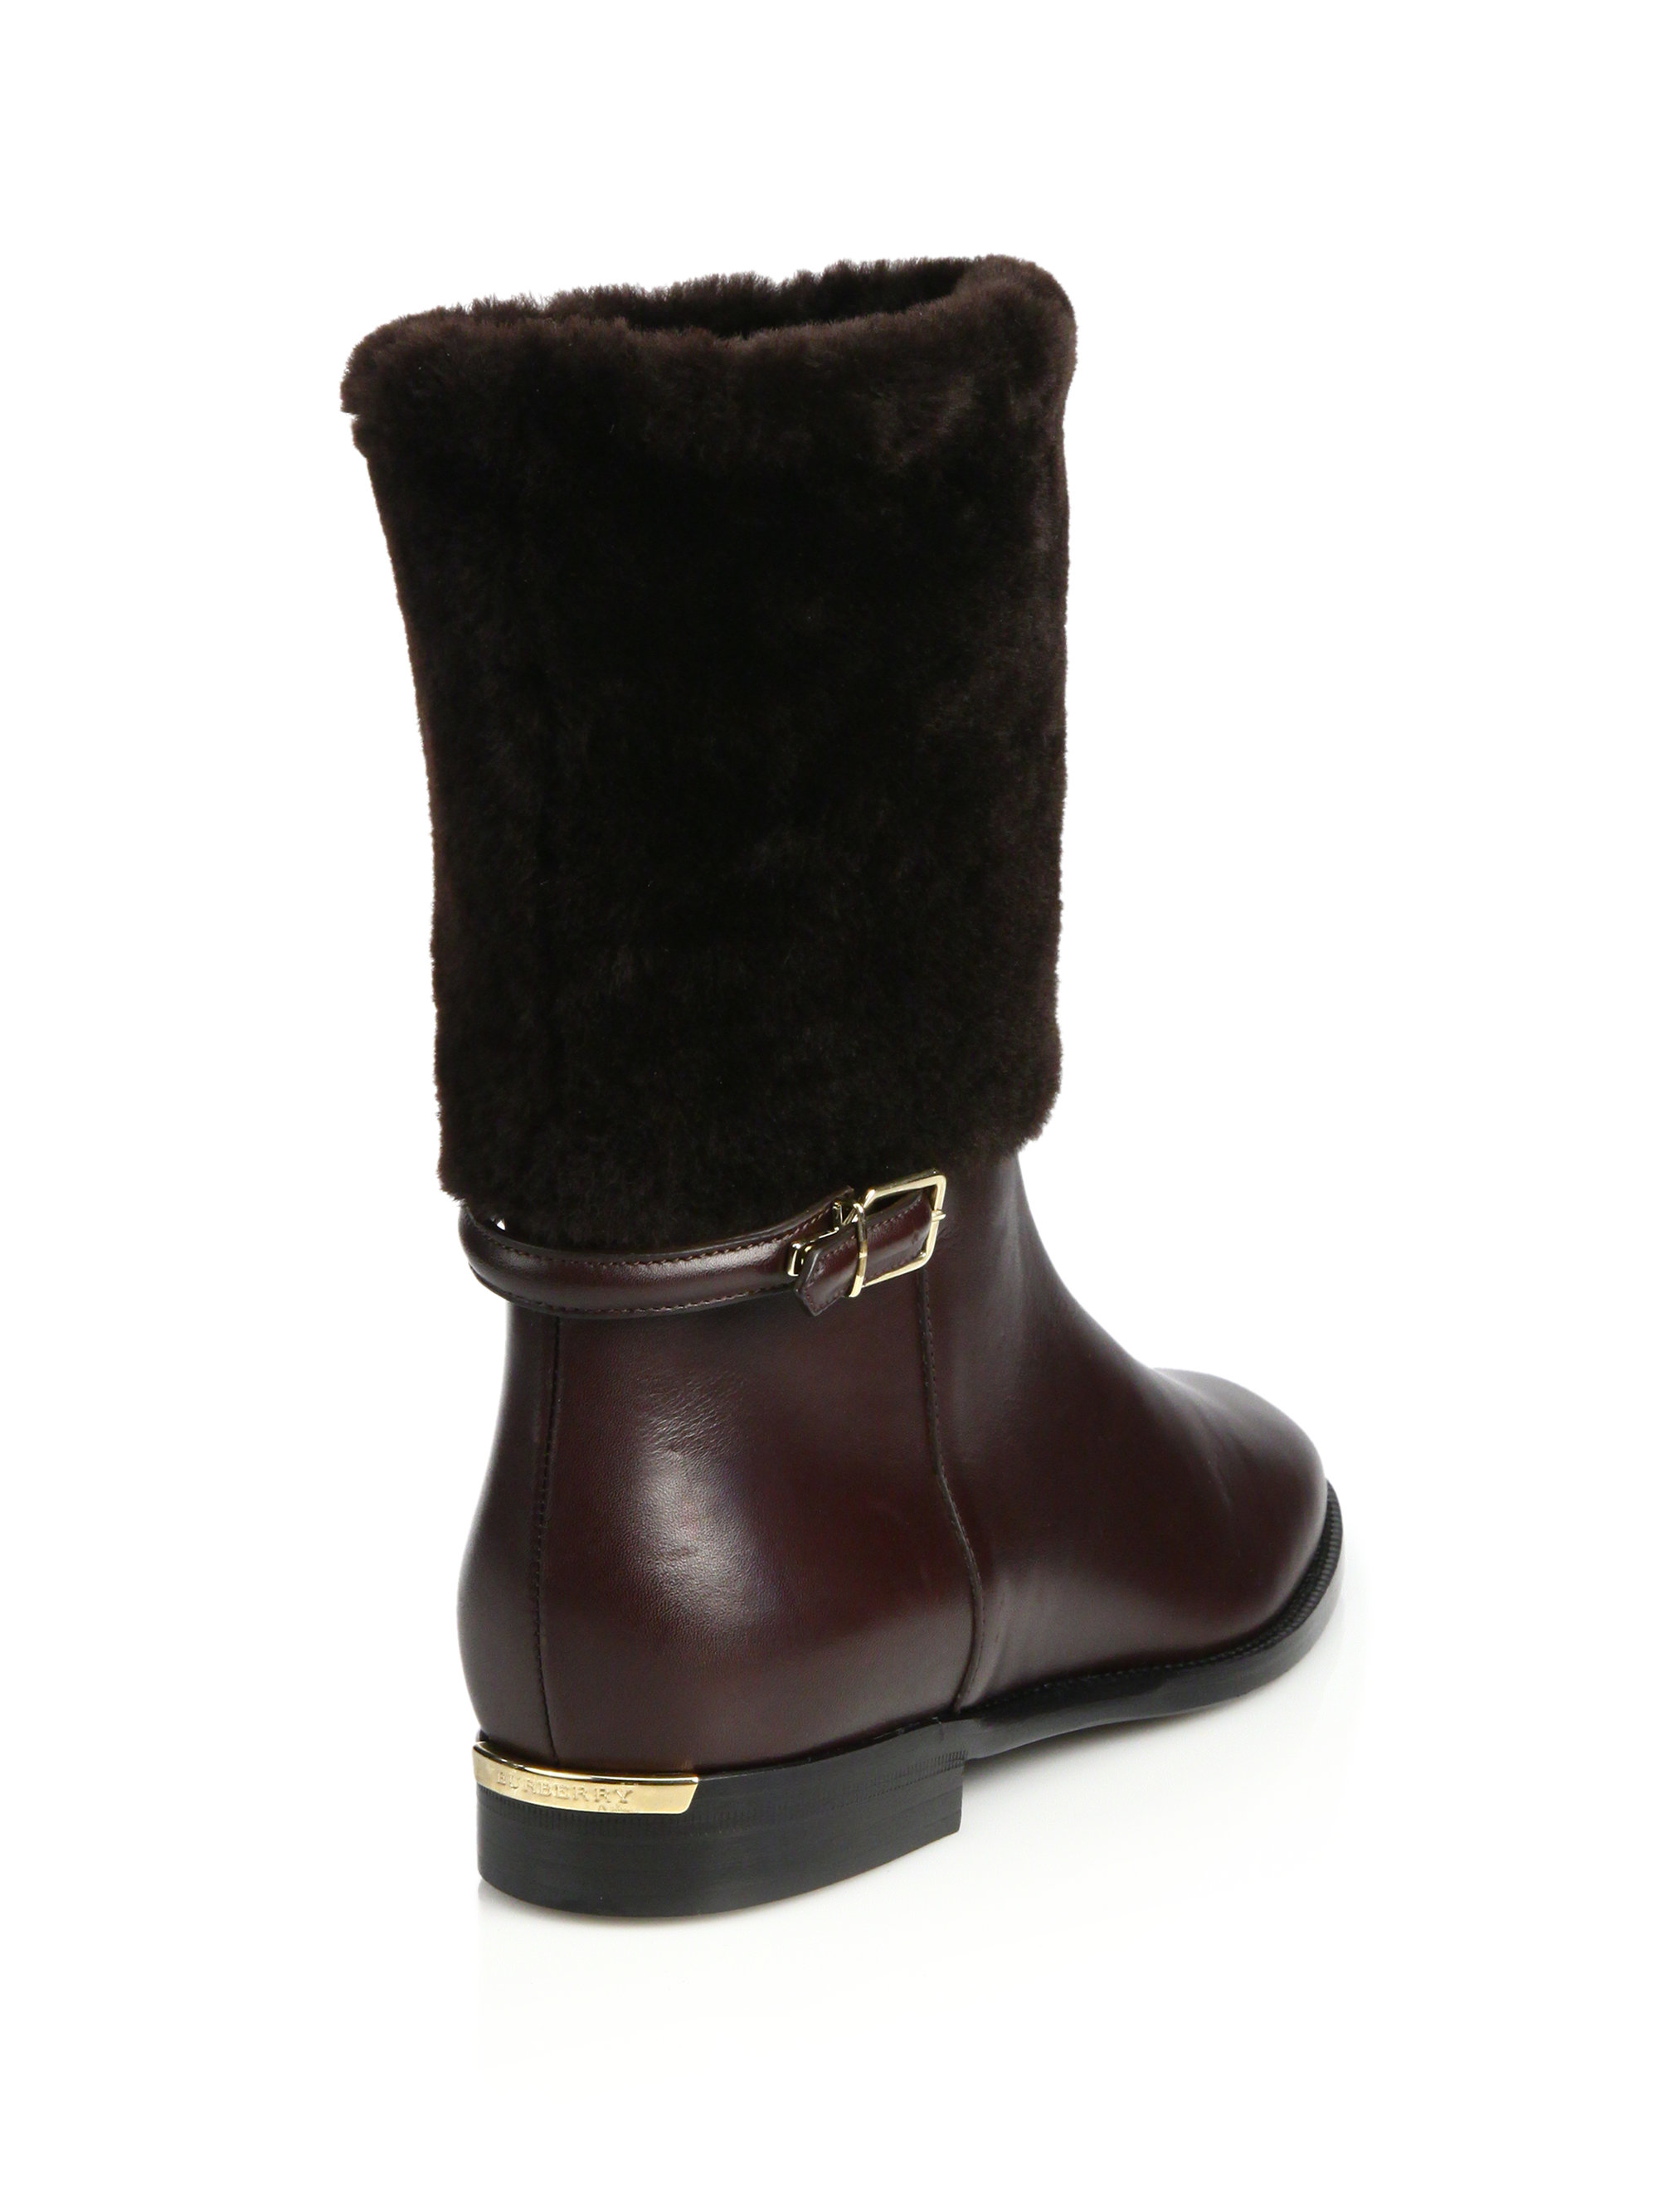 burberry winter boots women